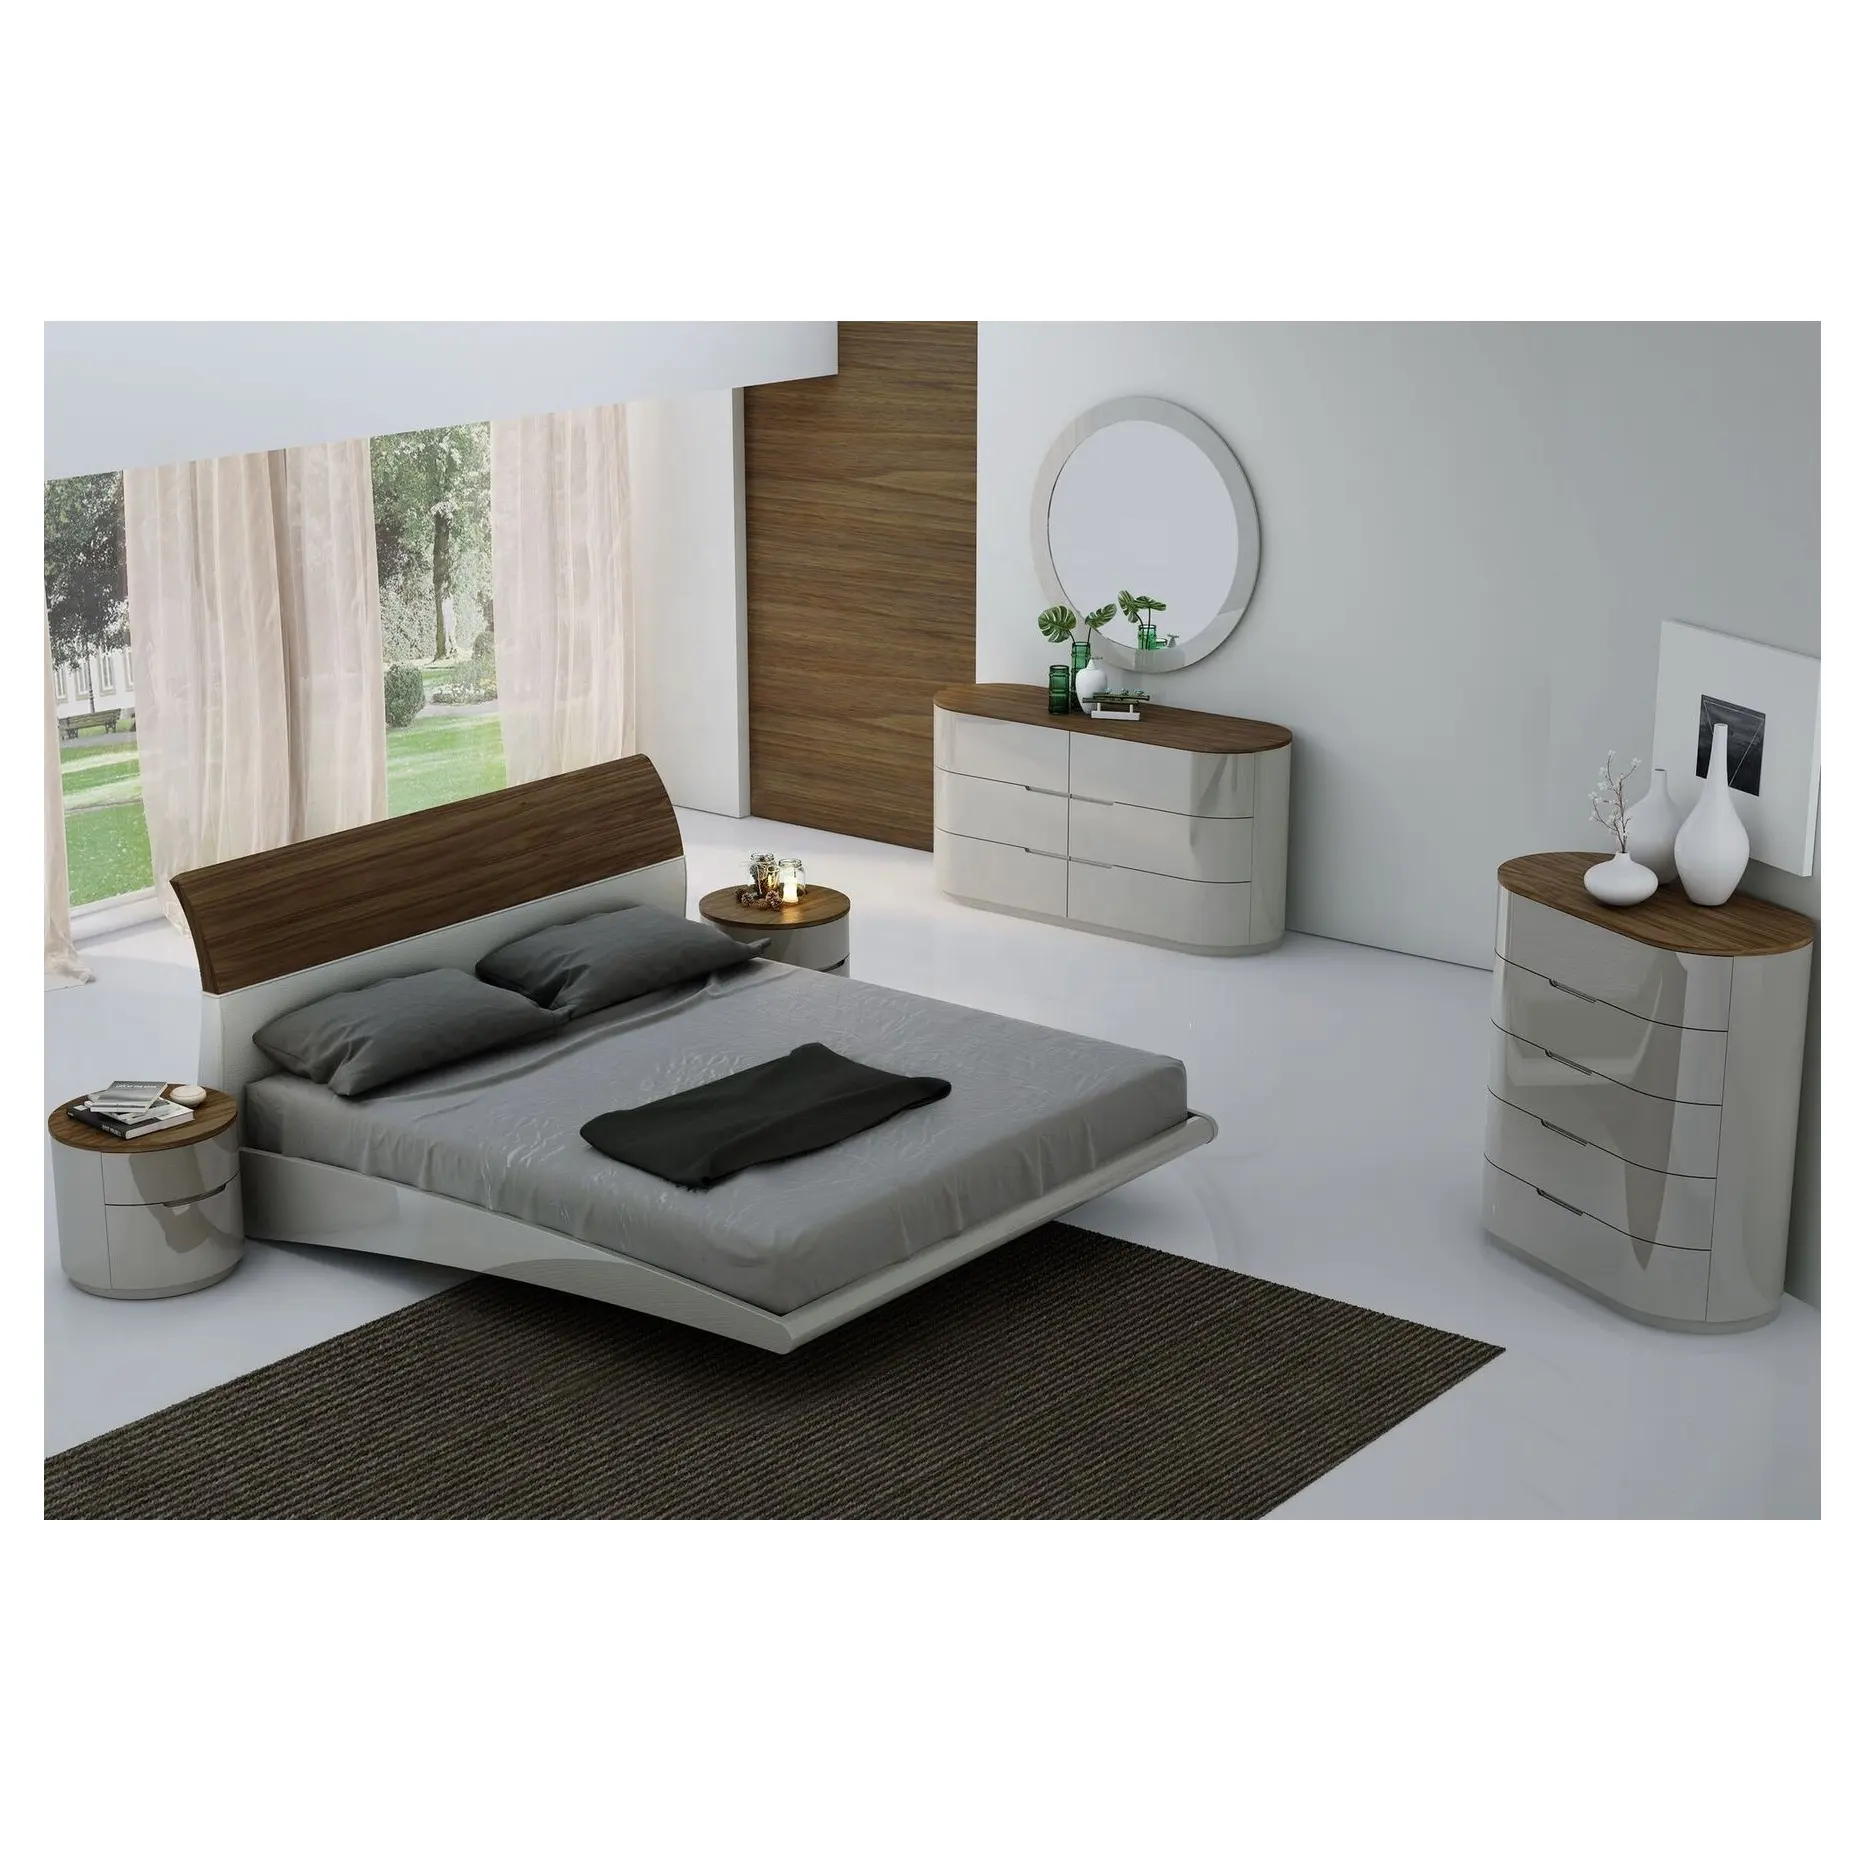 NOVA Home Bed set di mobili per camera da letto MHAA004 Design curvo piattaforma letto letti King Size camera da letto